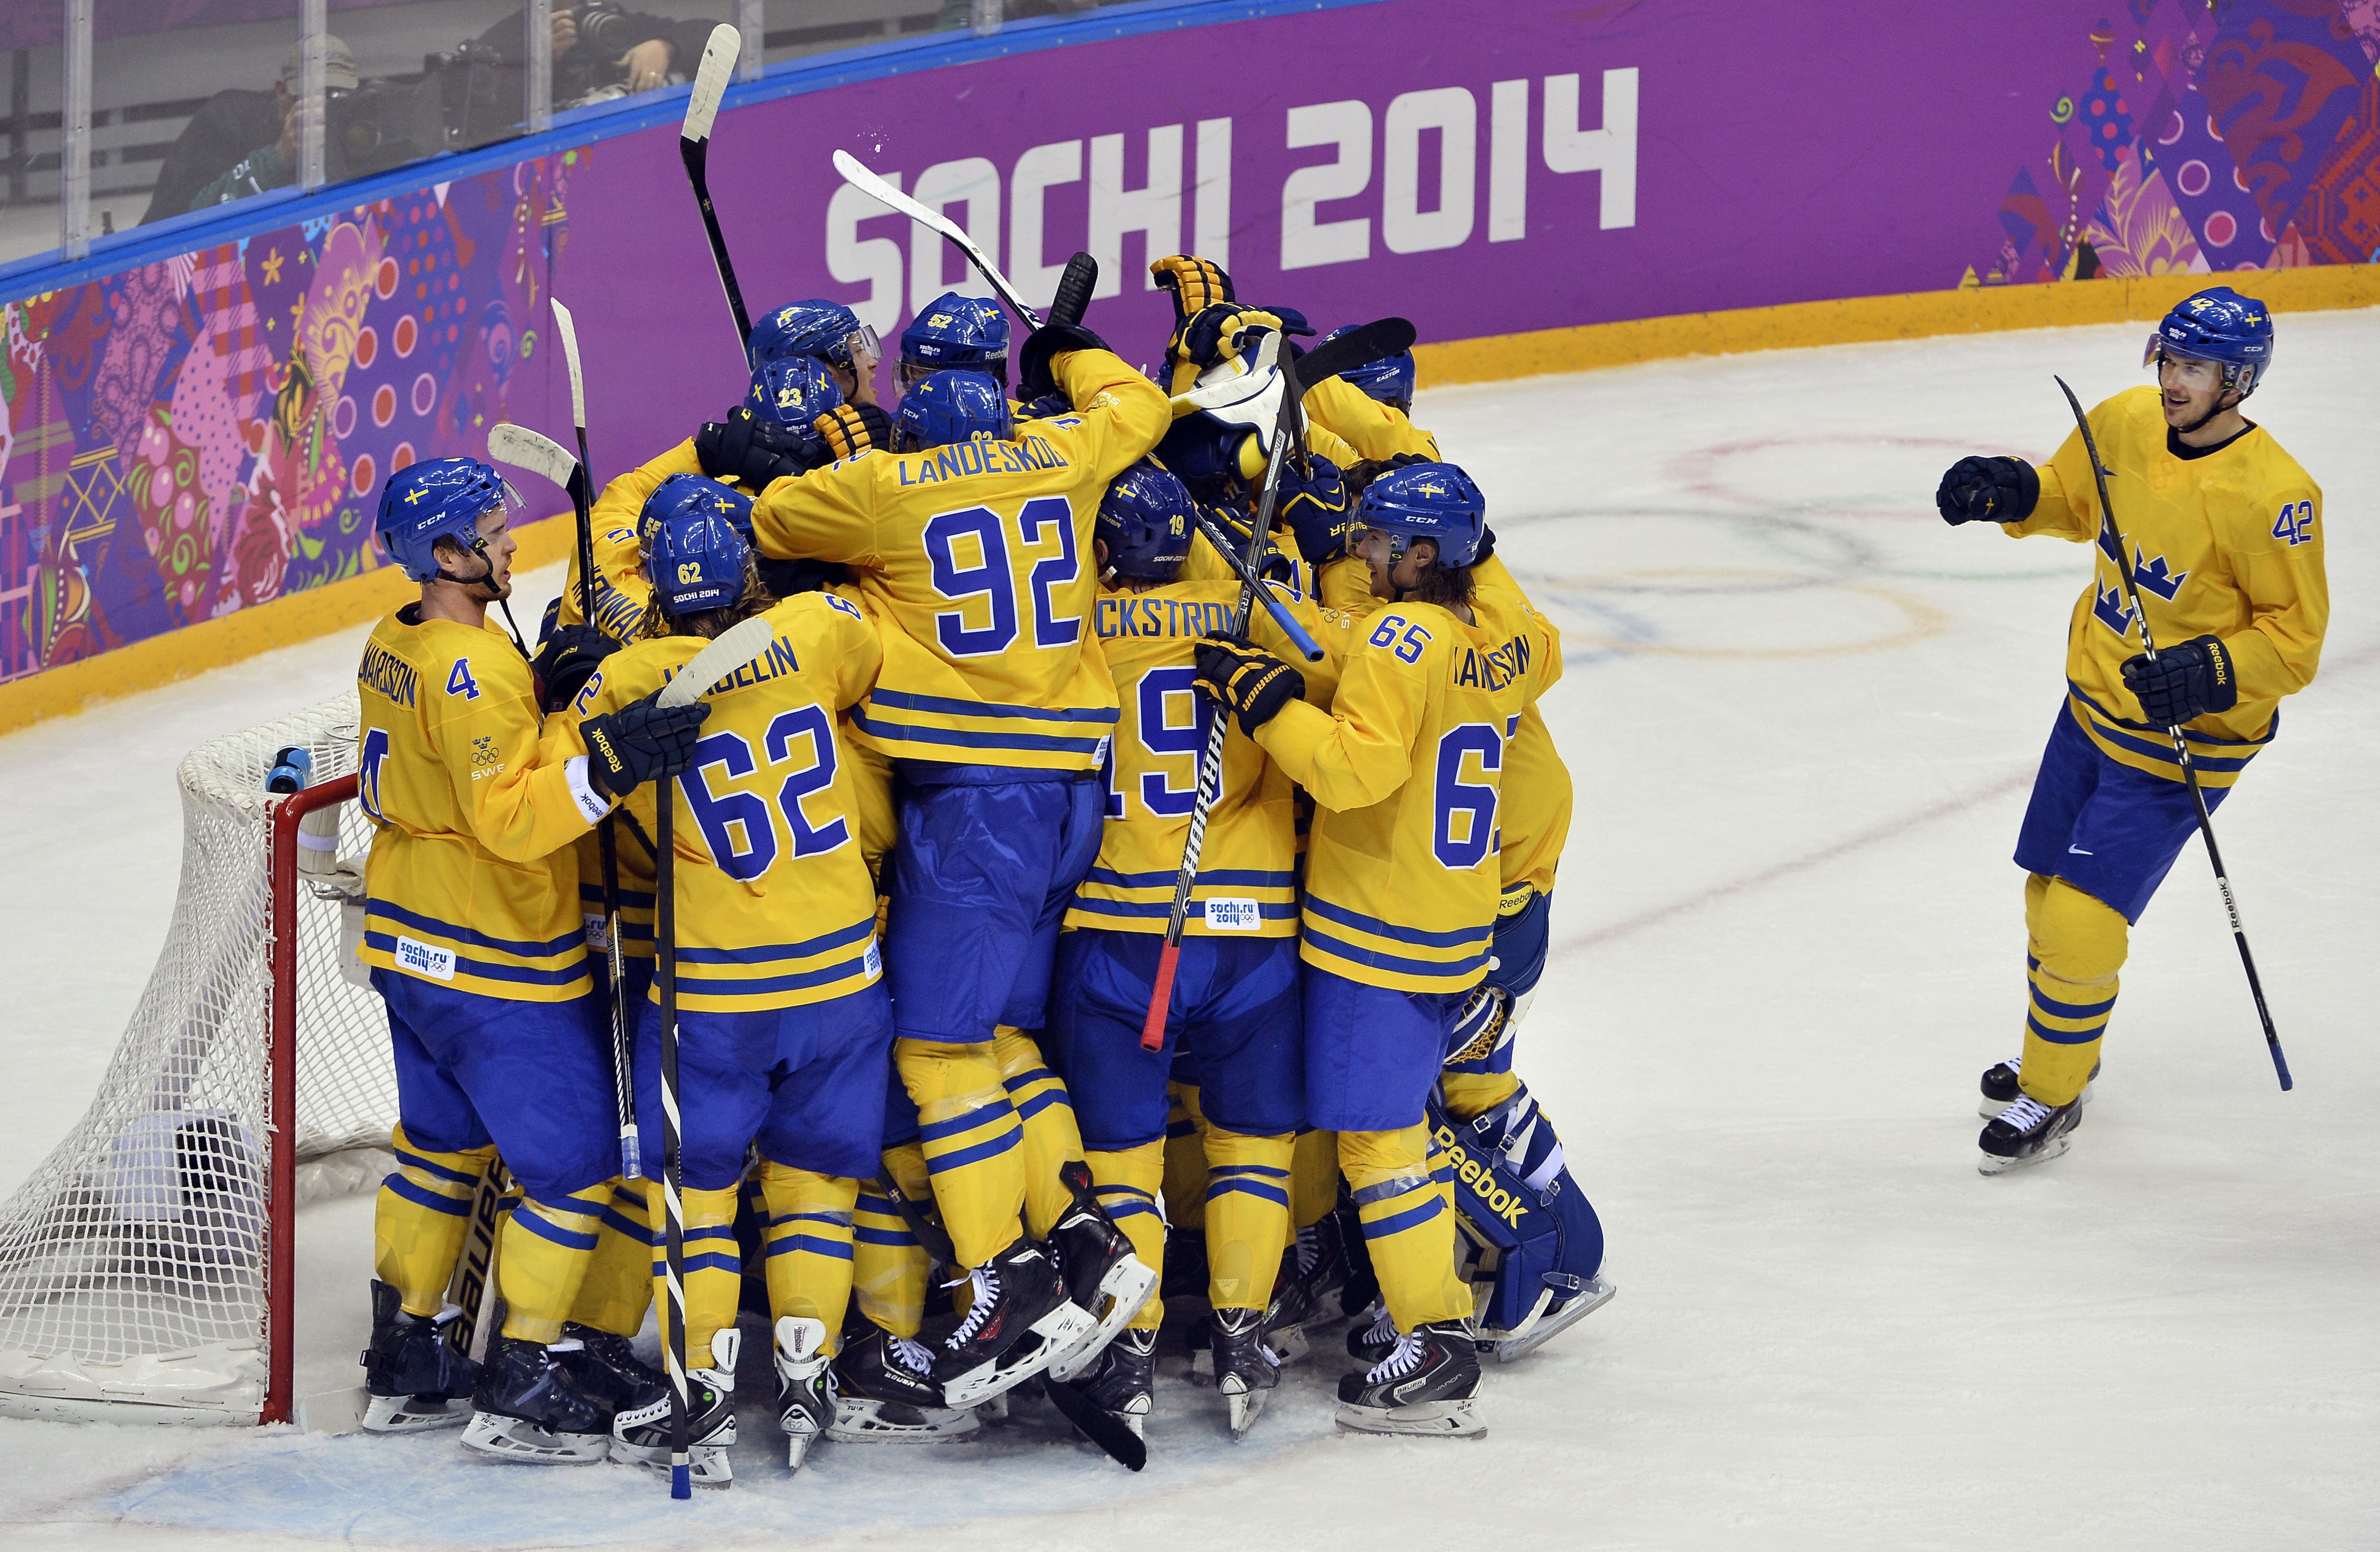 Svensk jubel efter seger med 2-1 mot Finland i OS-semifinalen. Foto: Jack Mikrut, SOK.